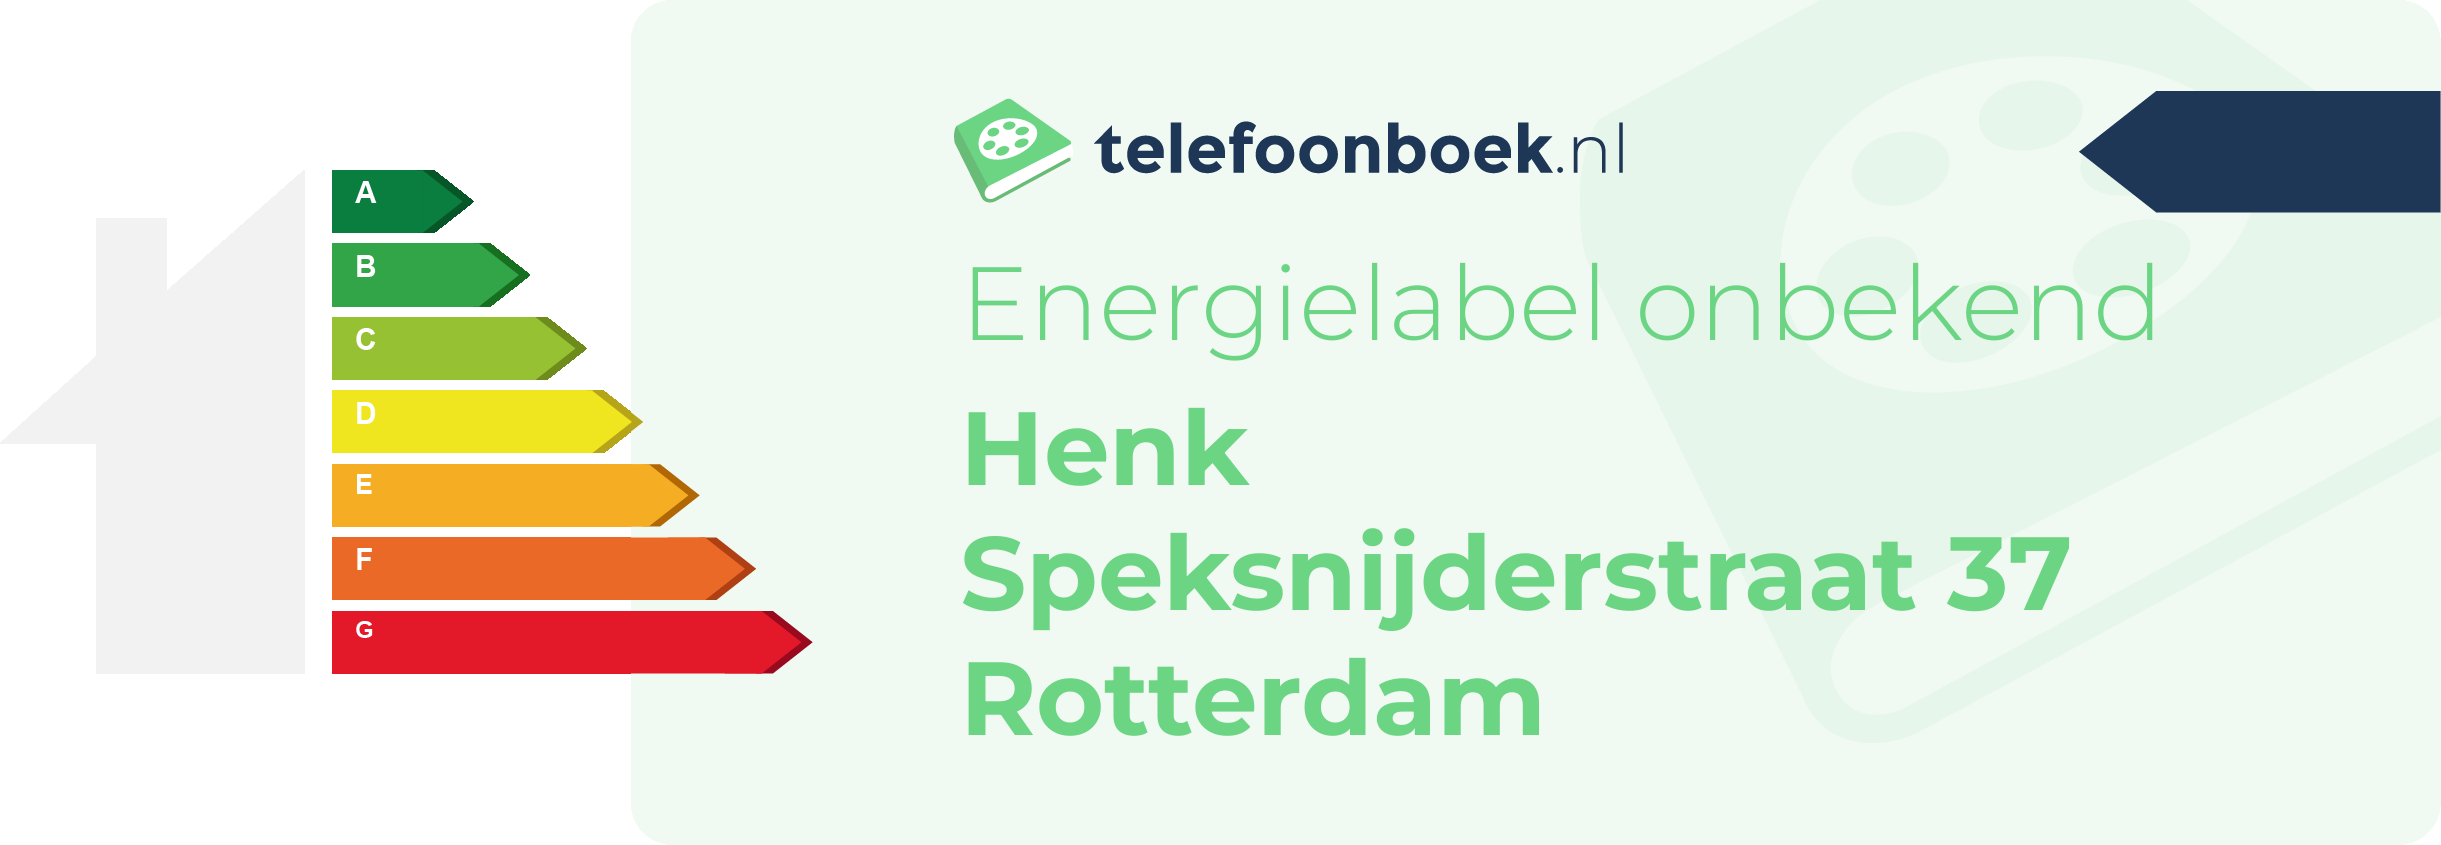 Energielabel Henk Speksnijderstraat 37 Rotterdam